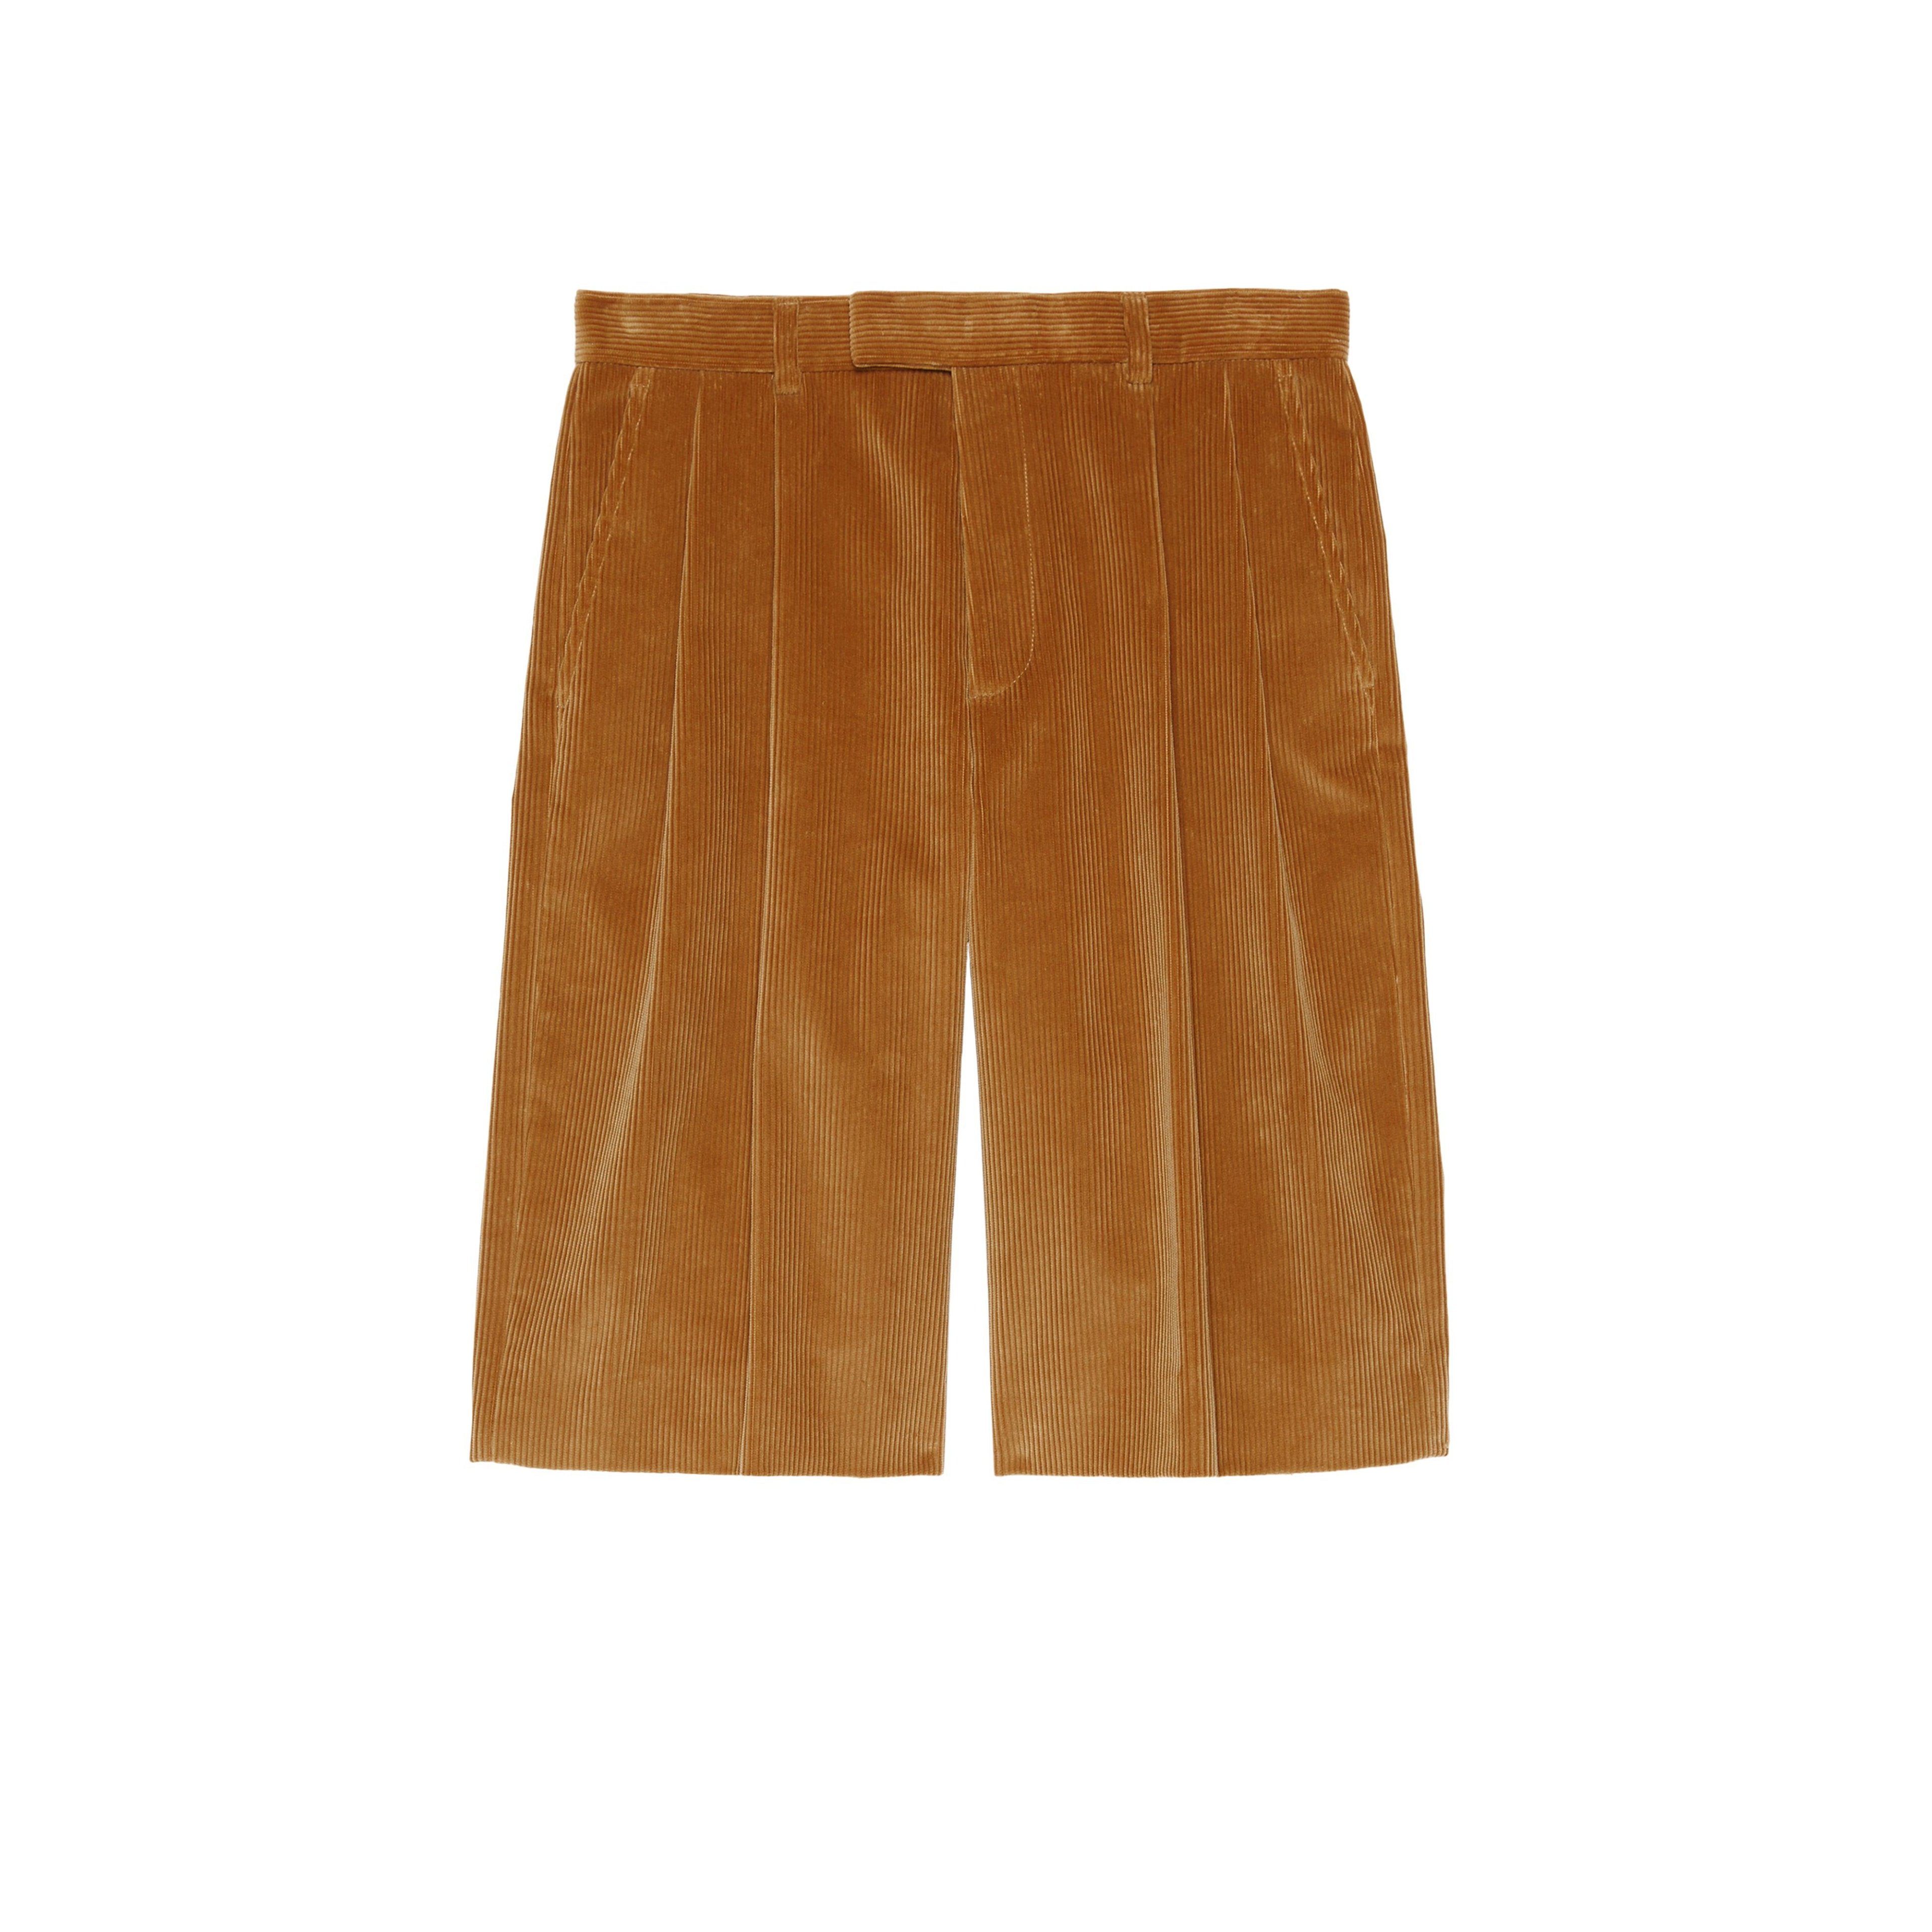 Gucci - Men’s DSM Exclusive Corduroy Short Pants - (Camel) by GUCCI